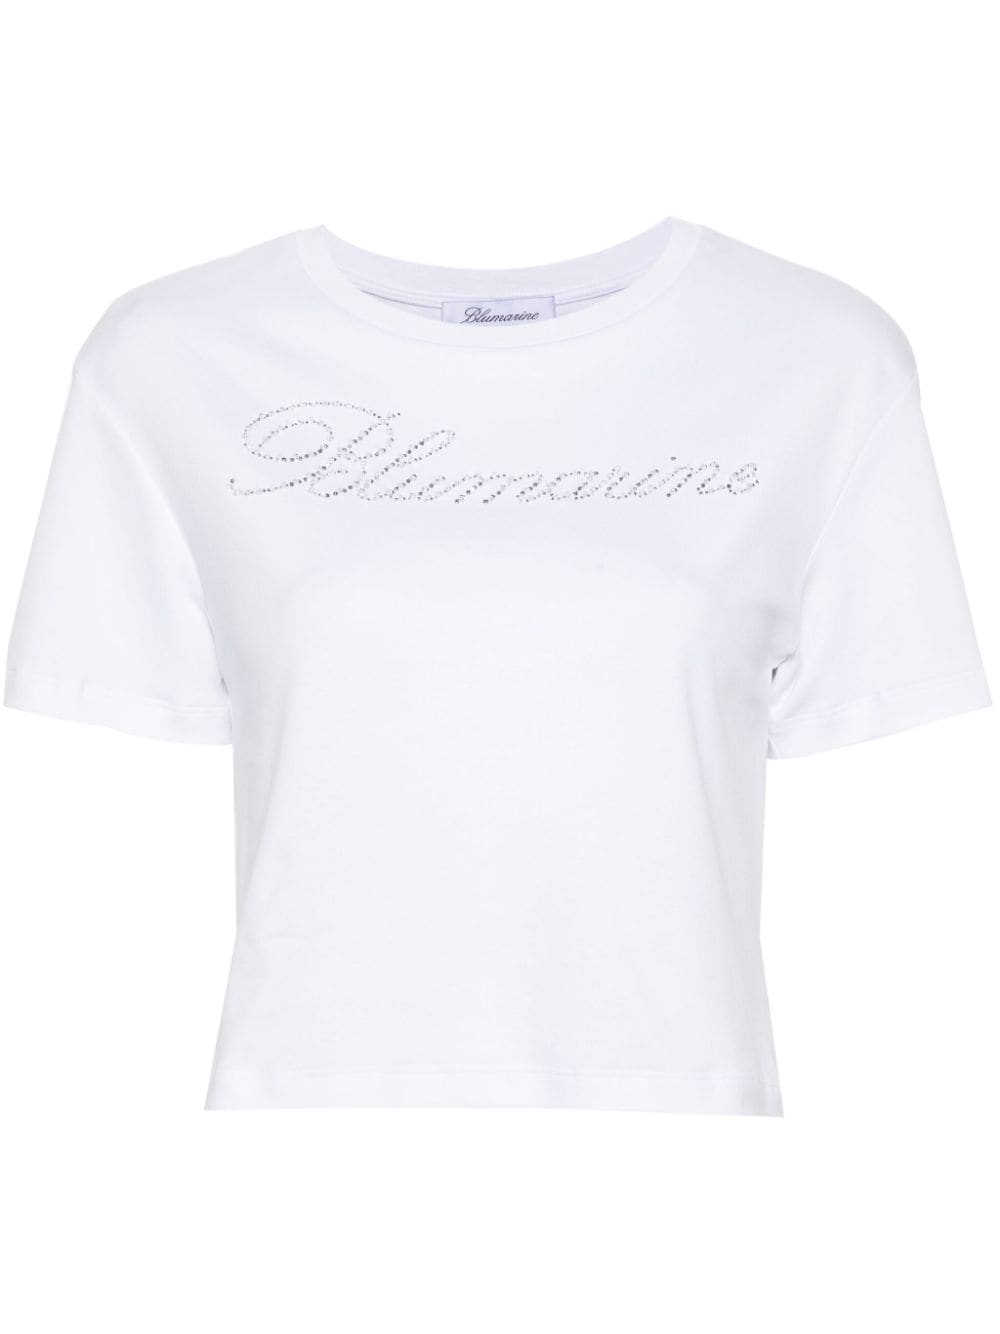 rhinestone embellished cotton T-shirt